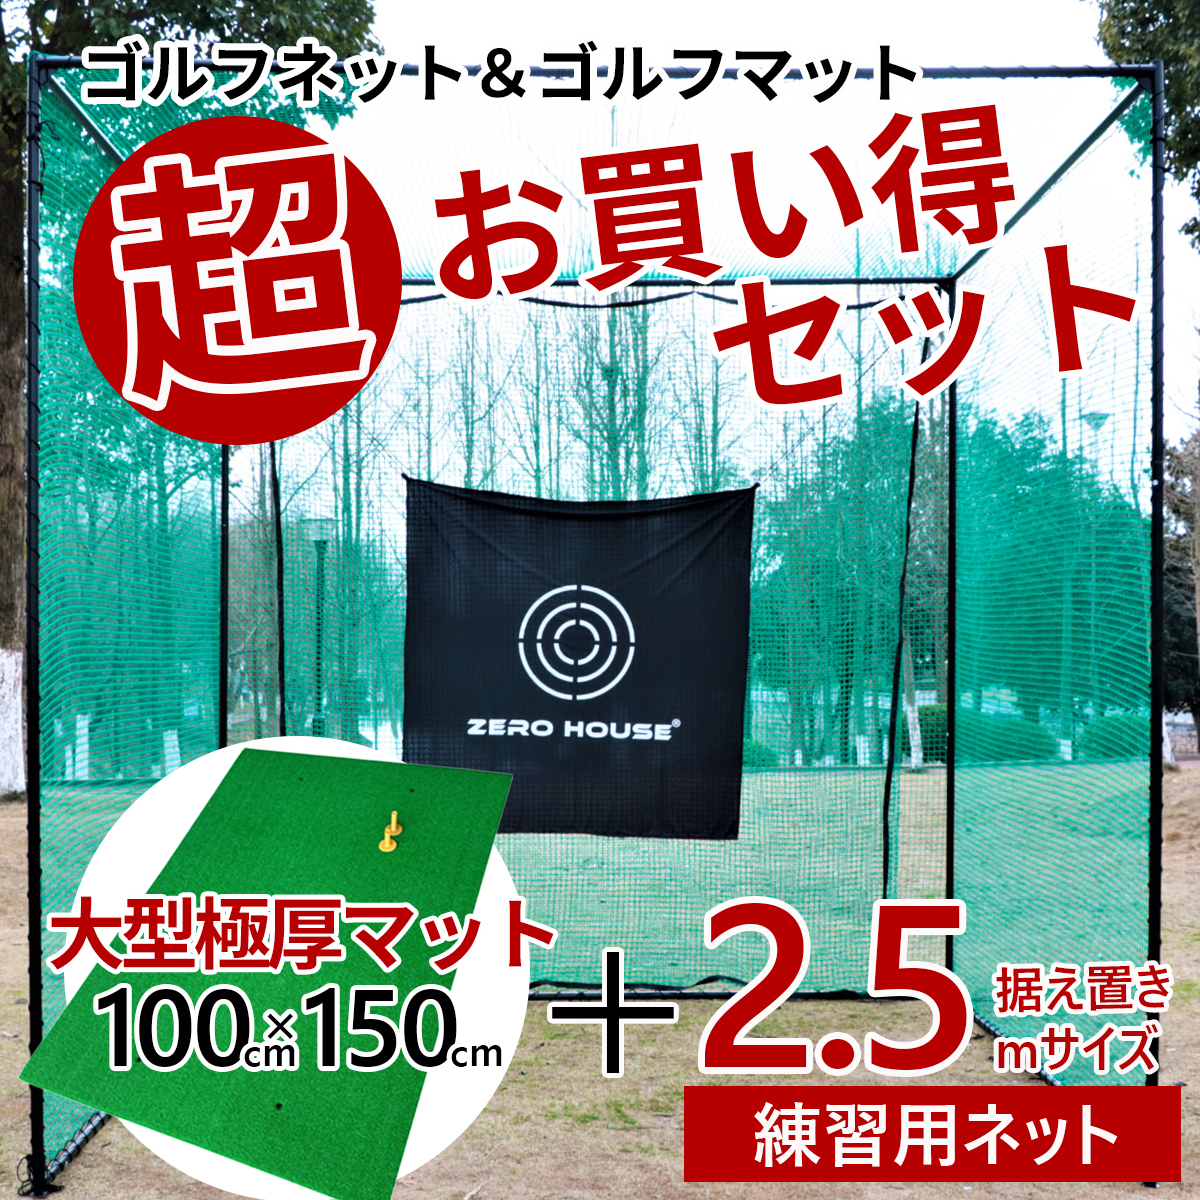 ☆大人気商品☆ 練習 ゴルフ ネット 2 緩衝材なし マット 練習器具